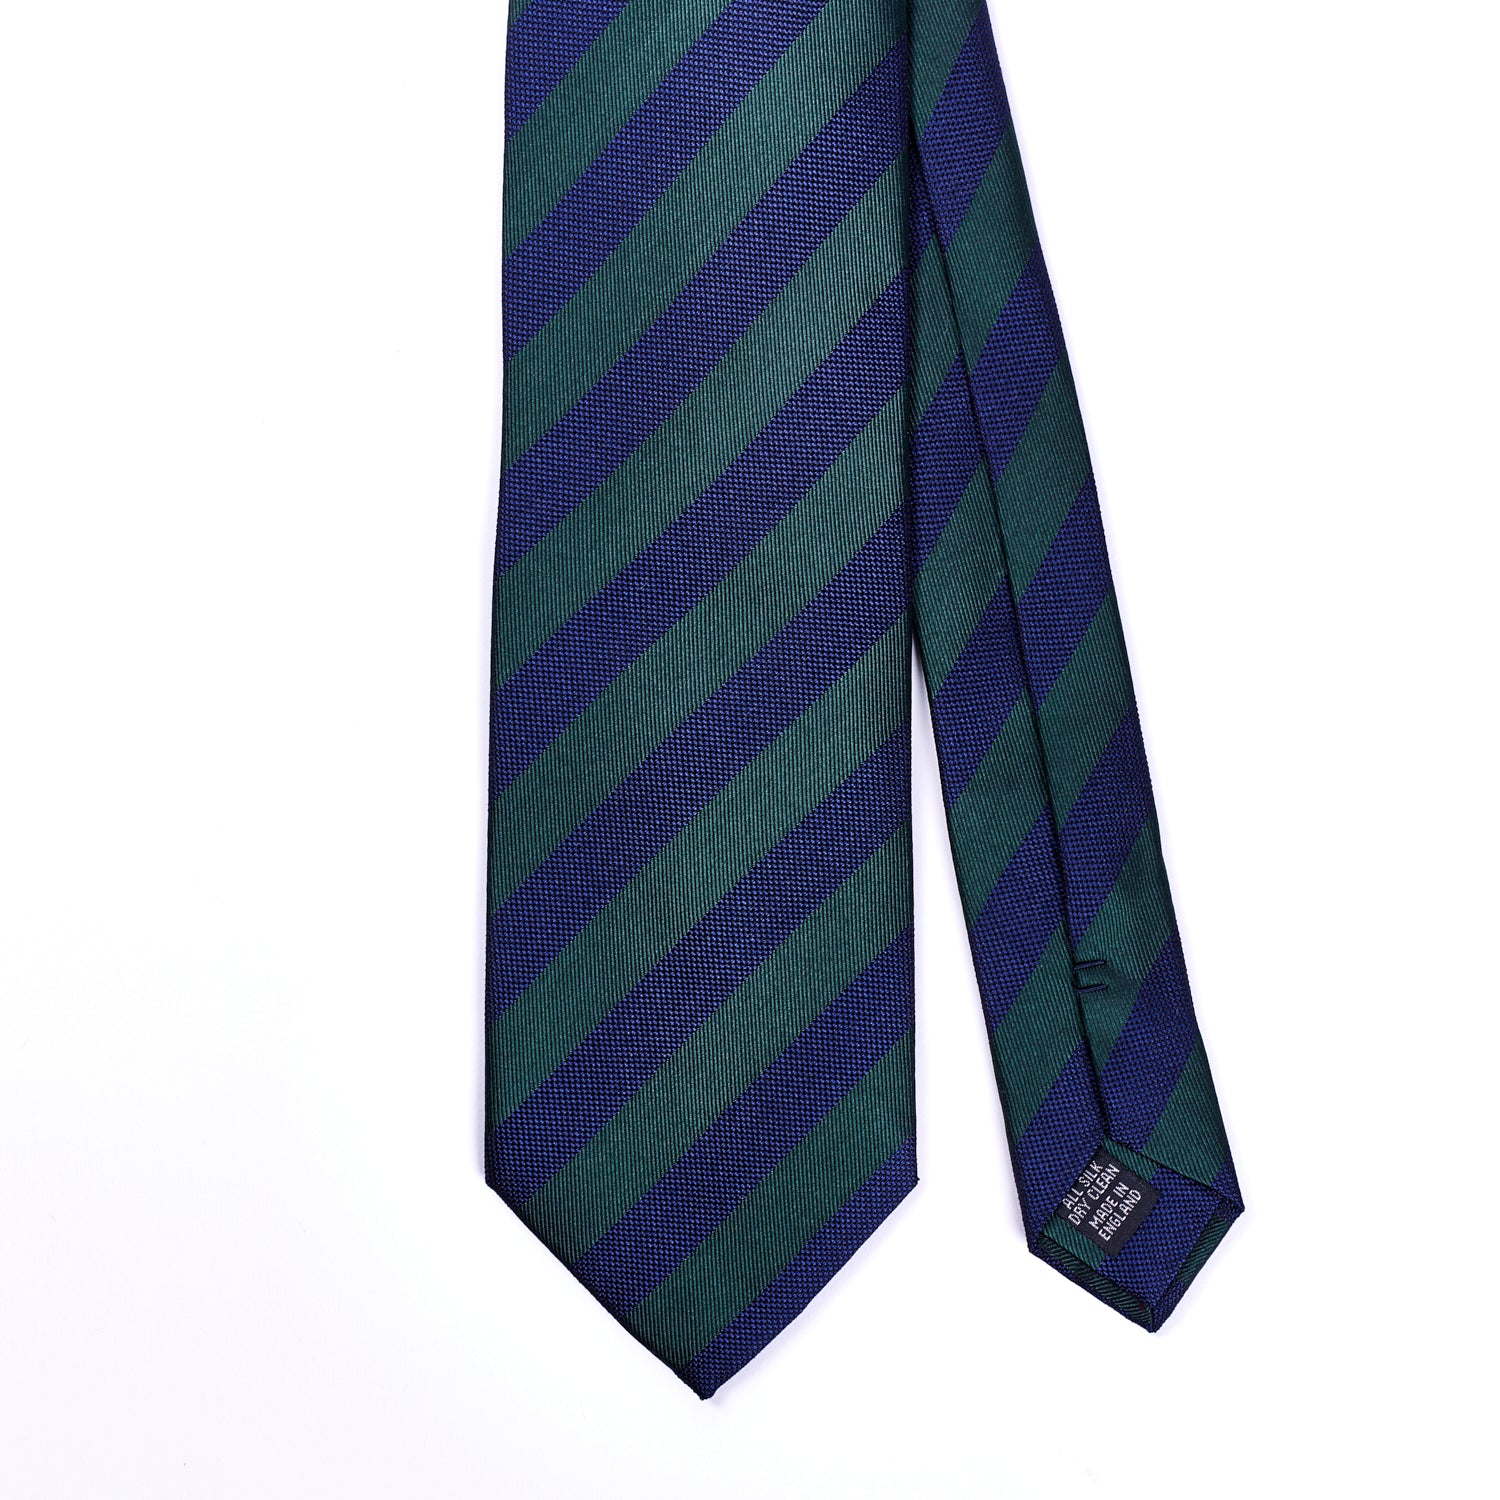 Sovereign Grade Woven Navy and Green Rep Tie, 150 cm